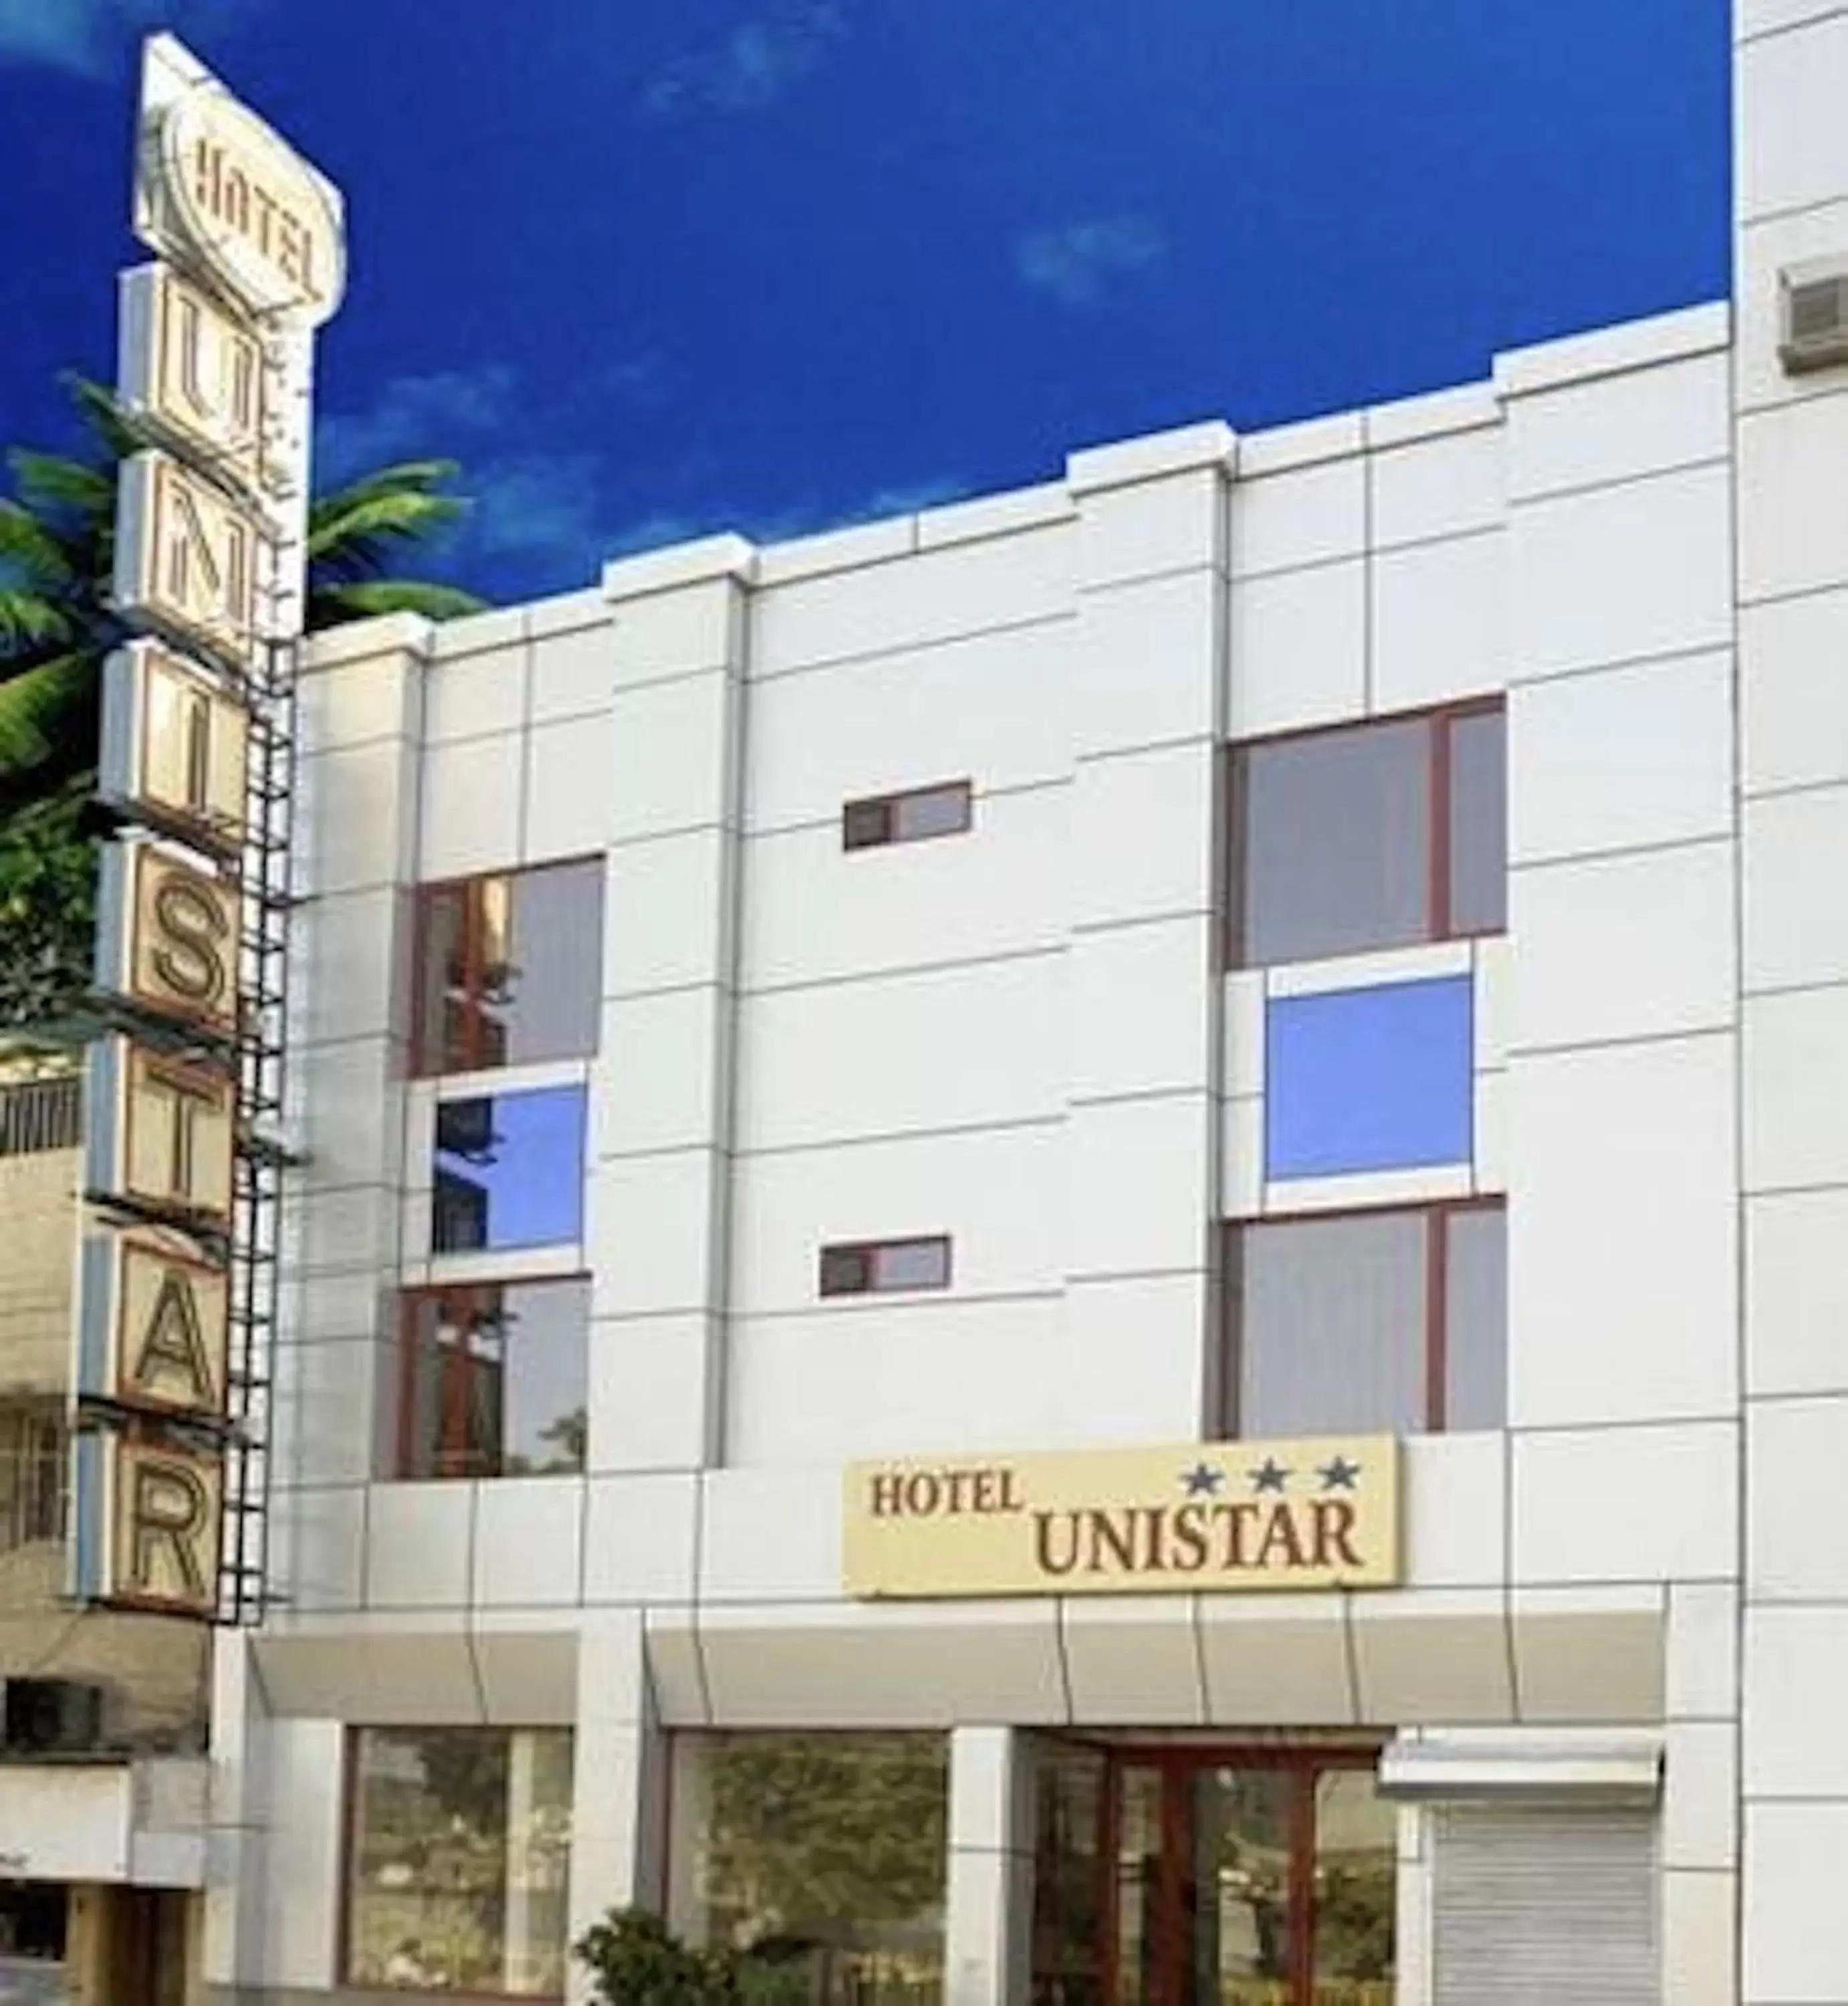 Facade/entrance, Property Building in Hotel Unistar